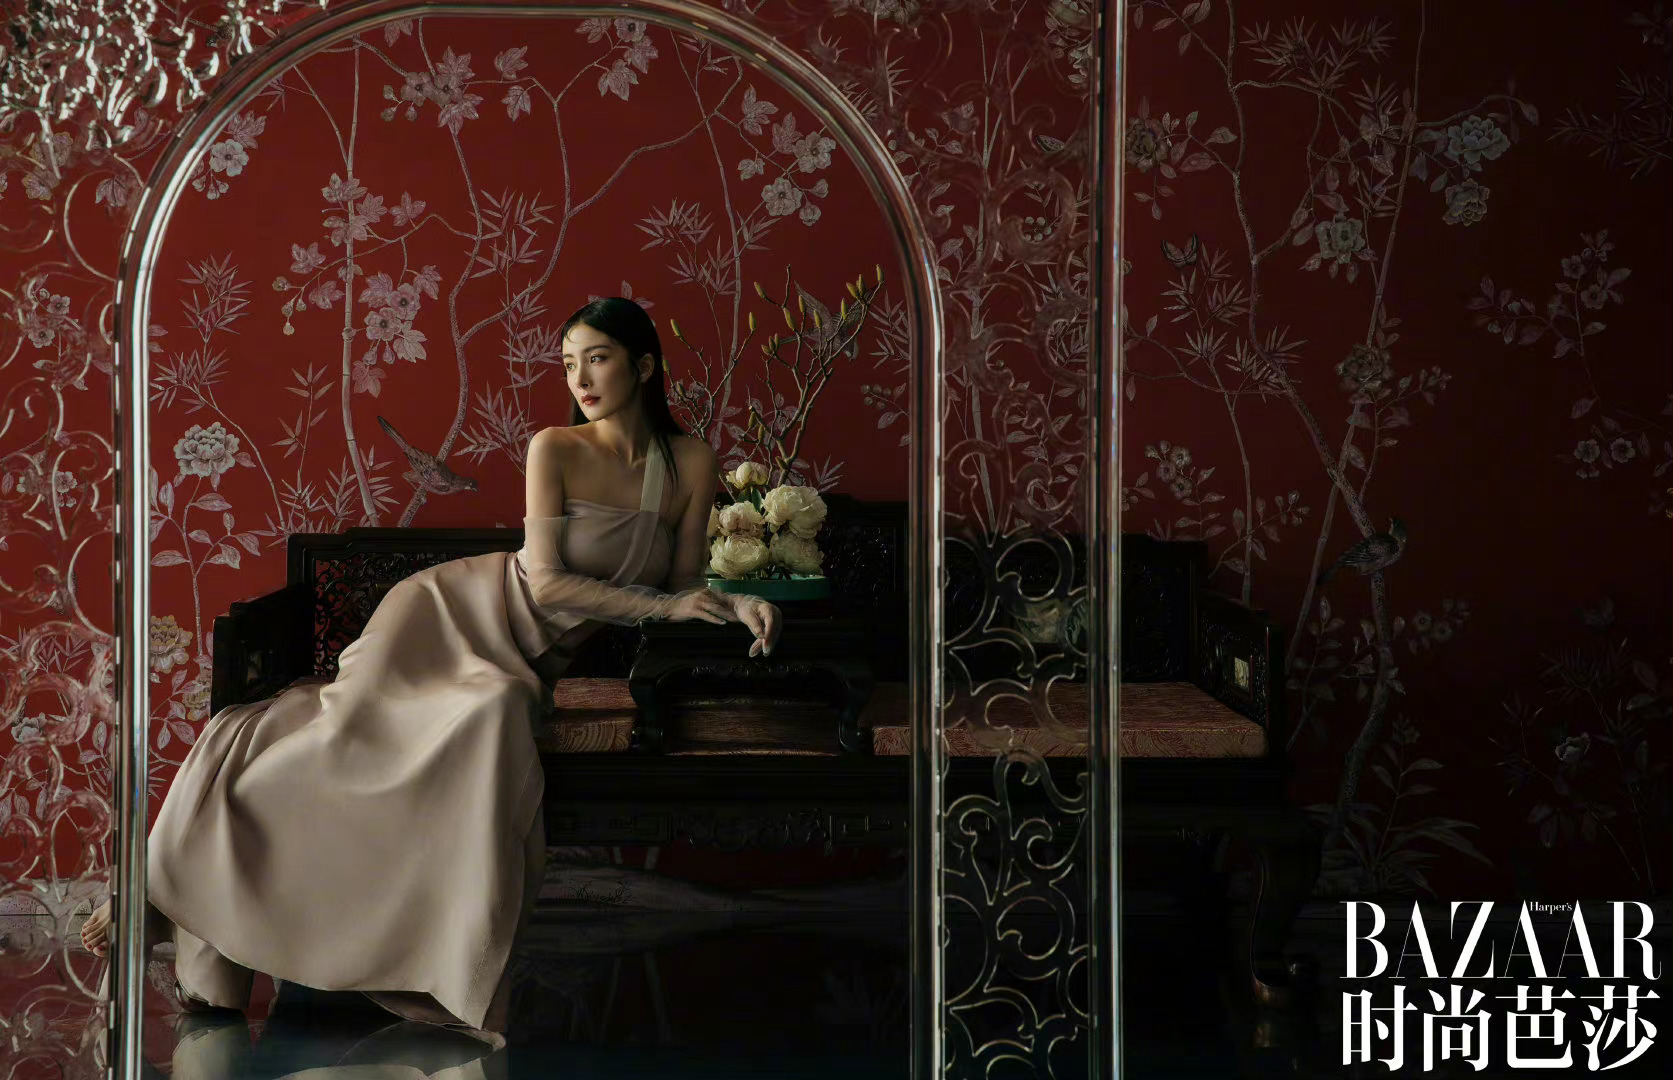 杨洋登录《芭莎男士》8月刊 短发造型很酷帅 - 明星网